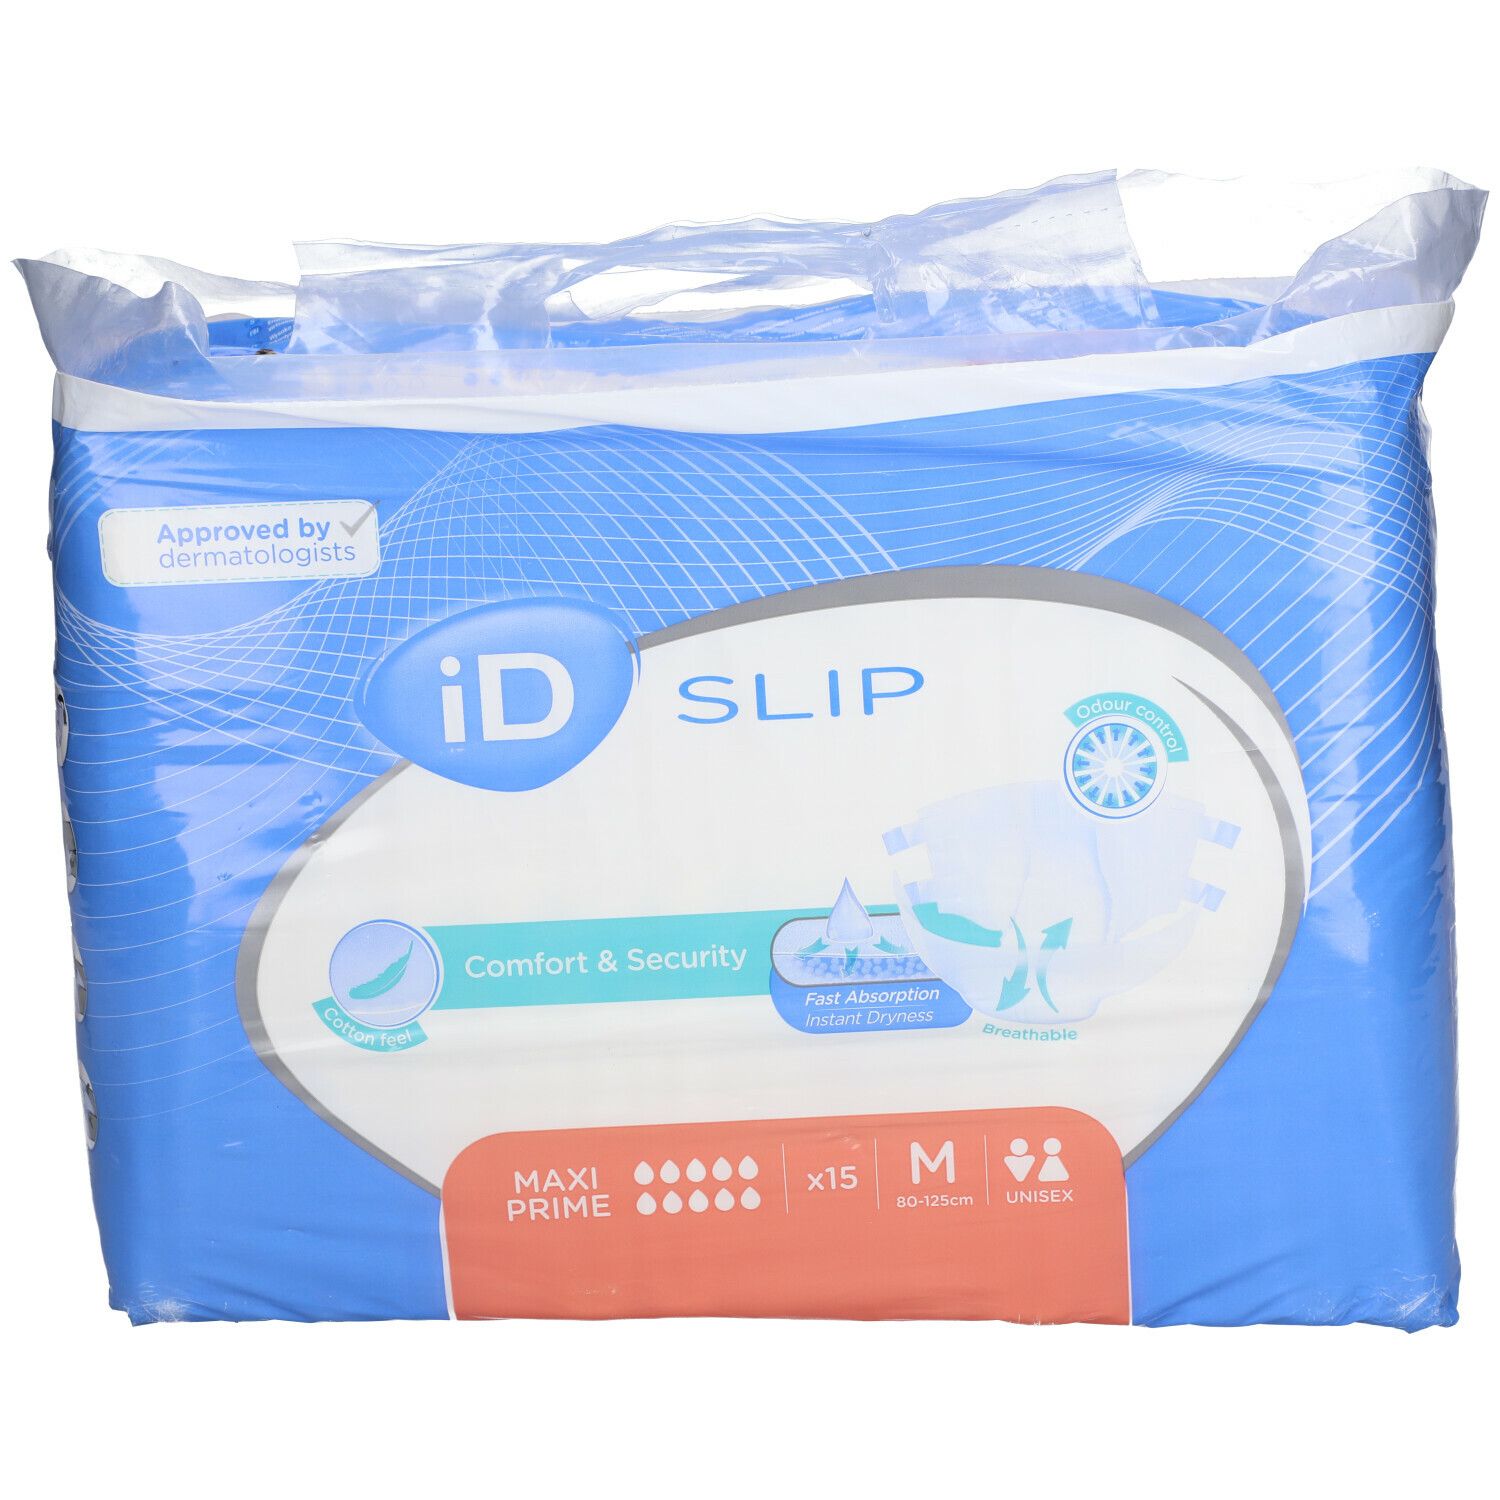 iD Slip Maxi Prime Medium 15 slips